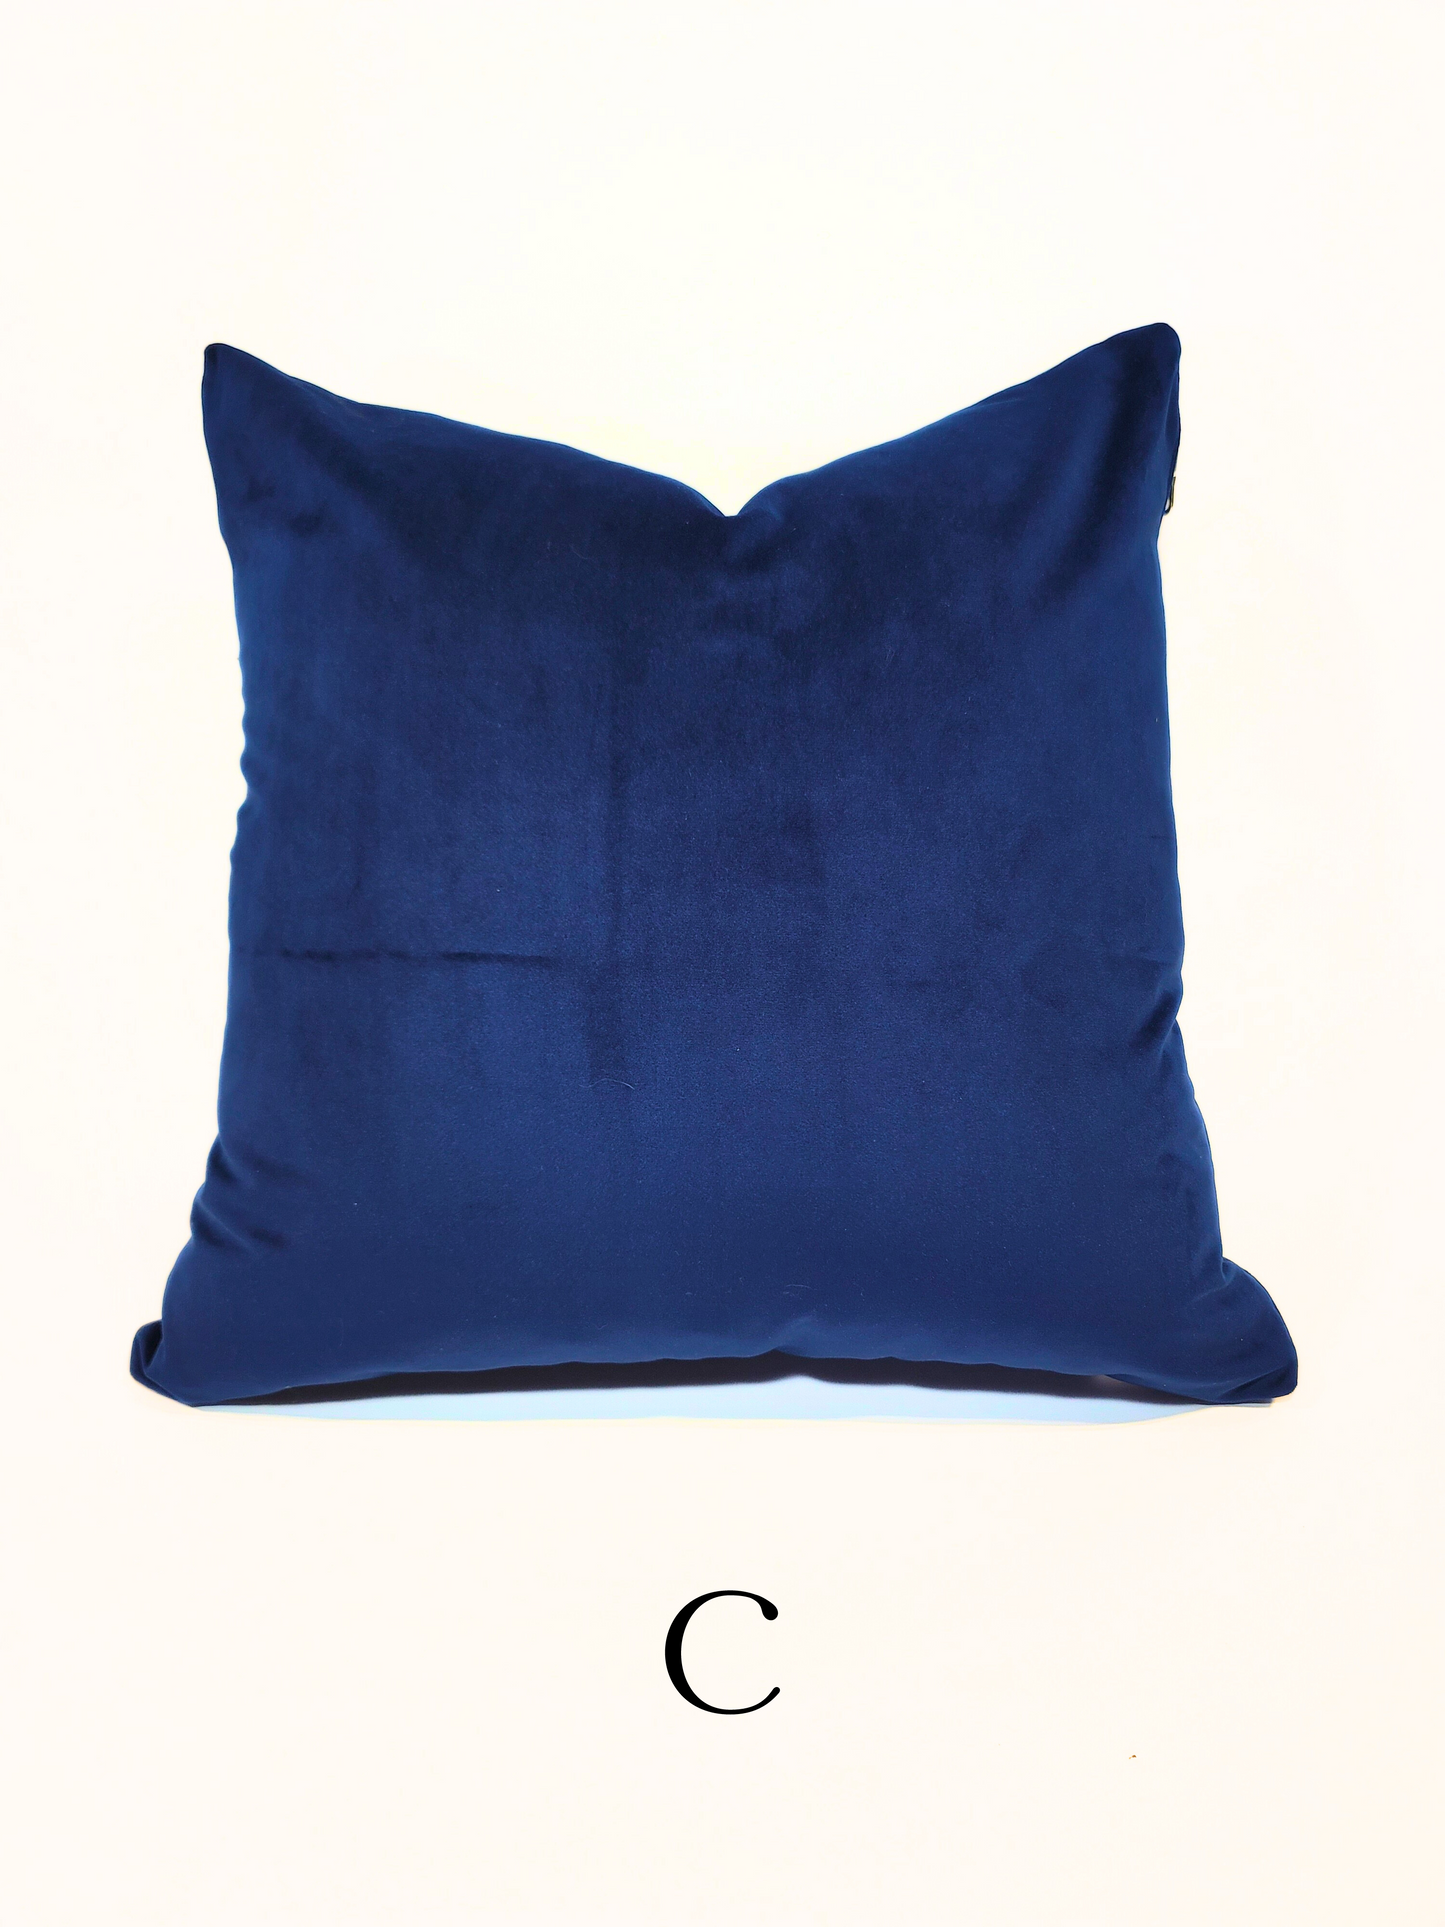 "Majesty Blue" Velvet Indoor Toss Pillow Cover